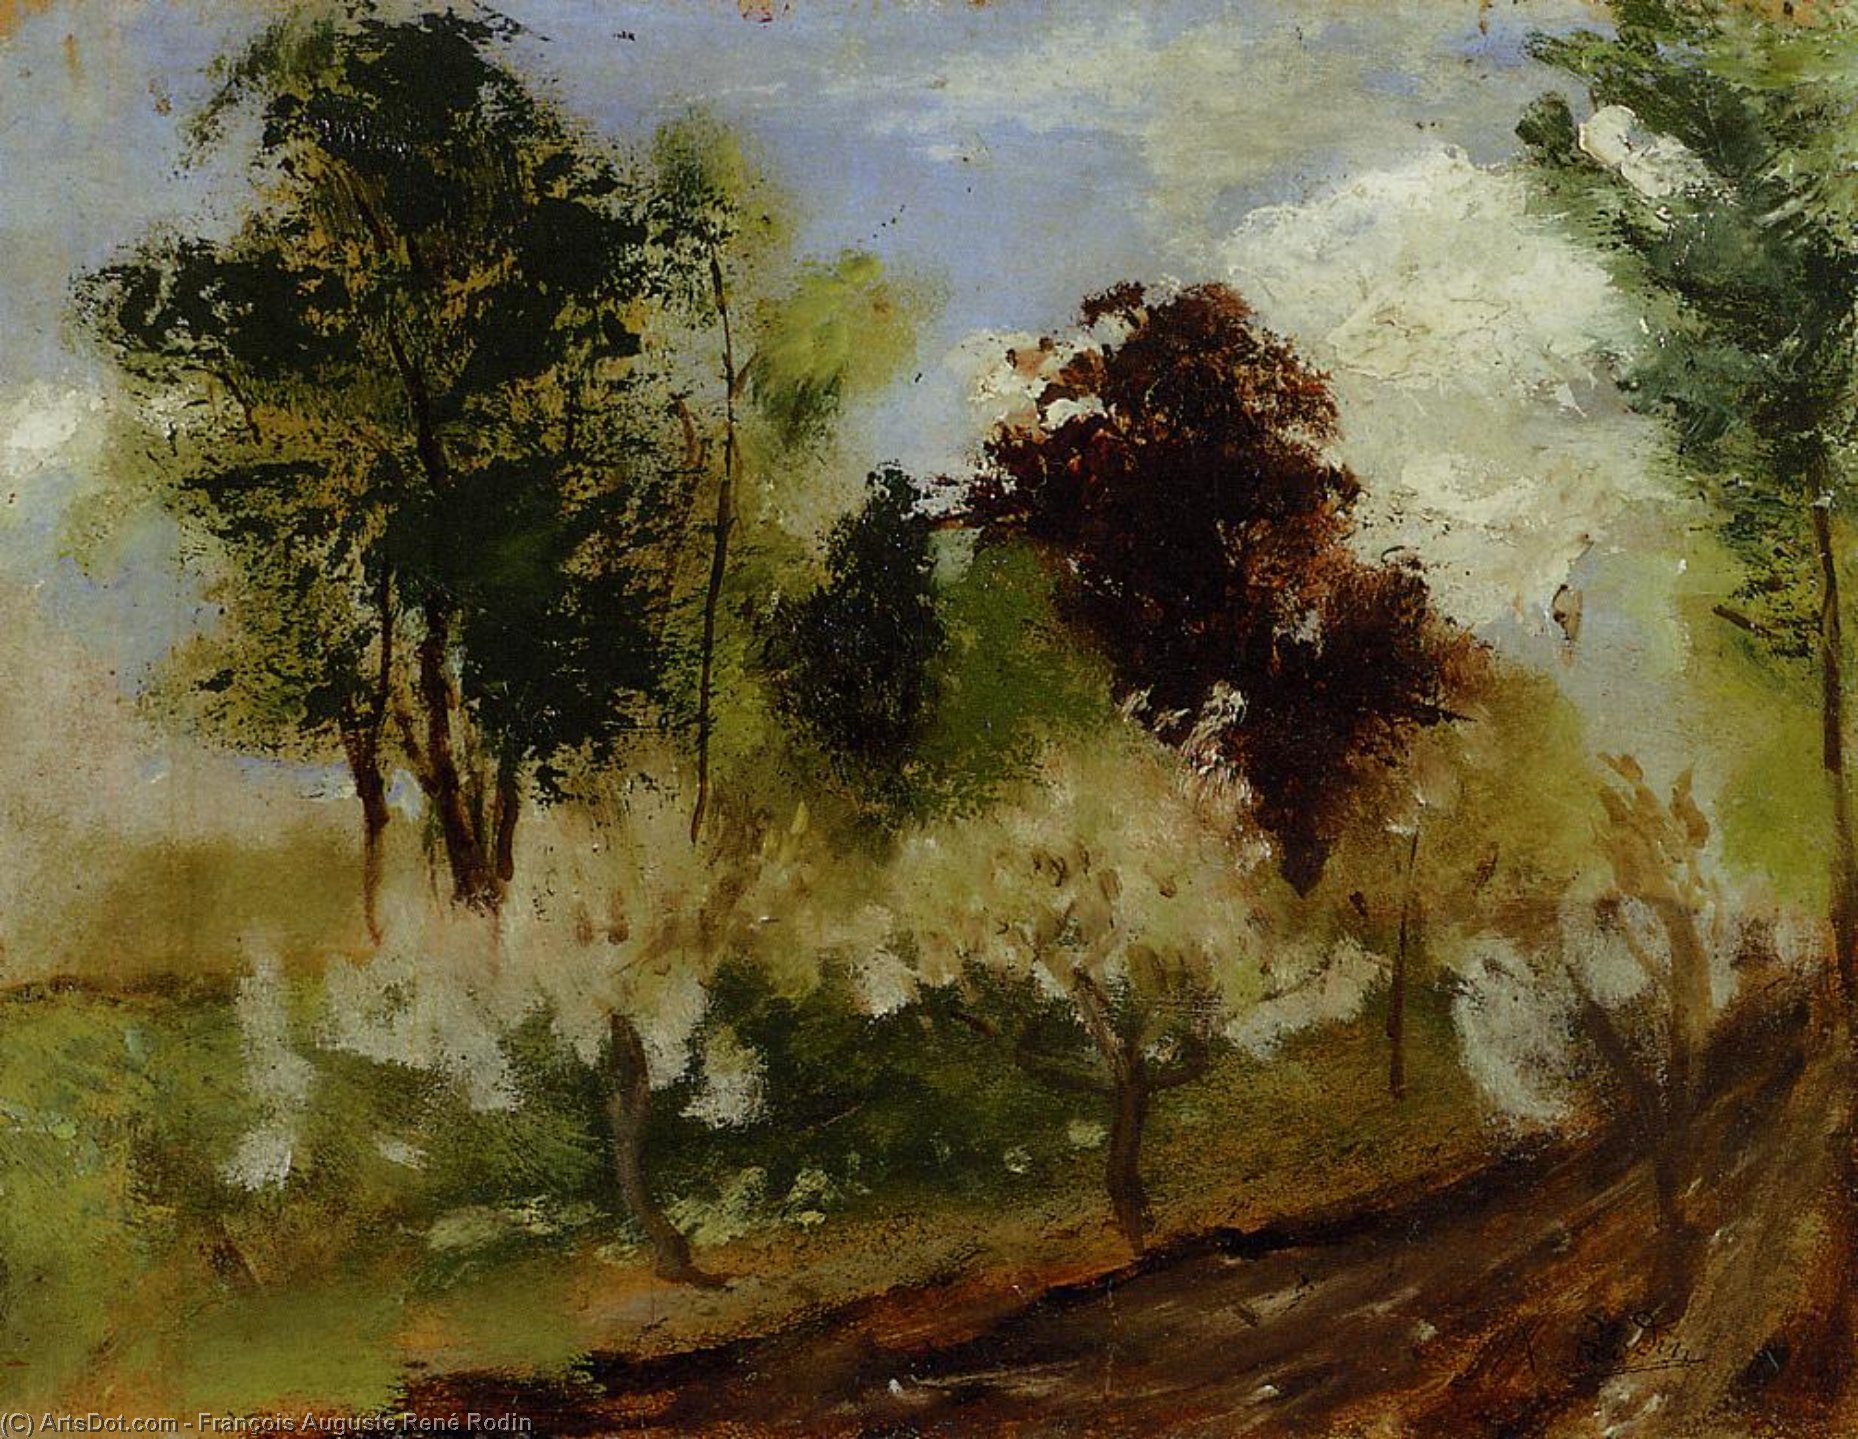 WikiOO.org - Encyclopedia of Fine Arts - Lukisan, Artwork François Auguste René Rodin - Belgian Landscape